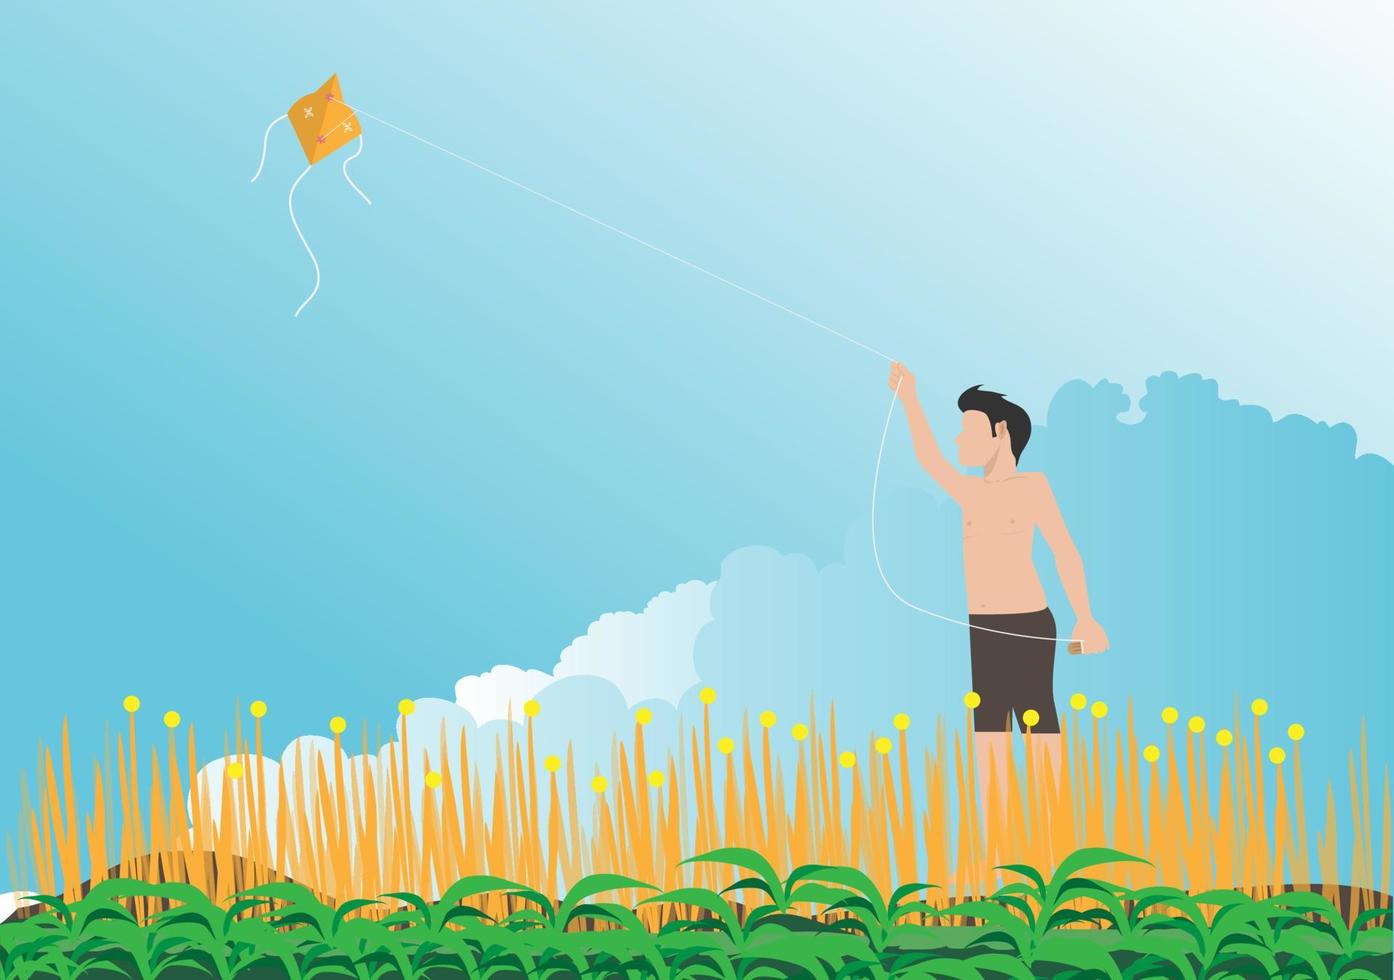 de jongen neemt zijn vlieger de lucht in en speelt in de zomer met de wind. vector platte cartoon afbeelding.